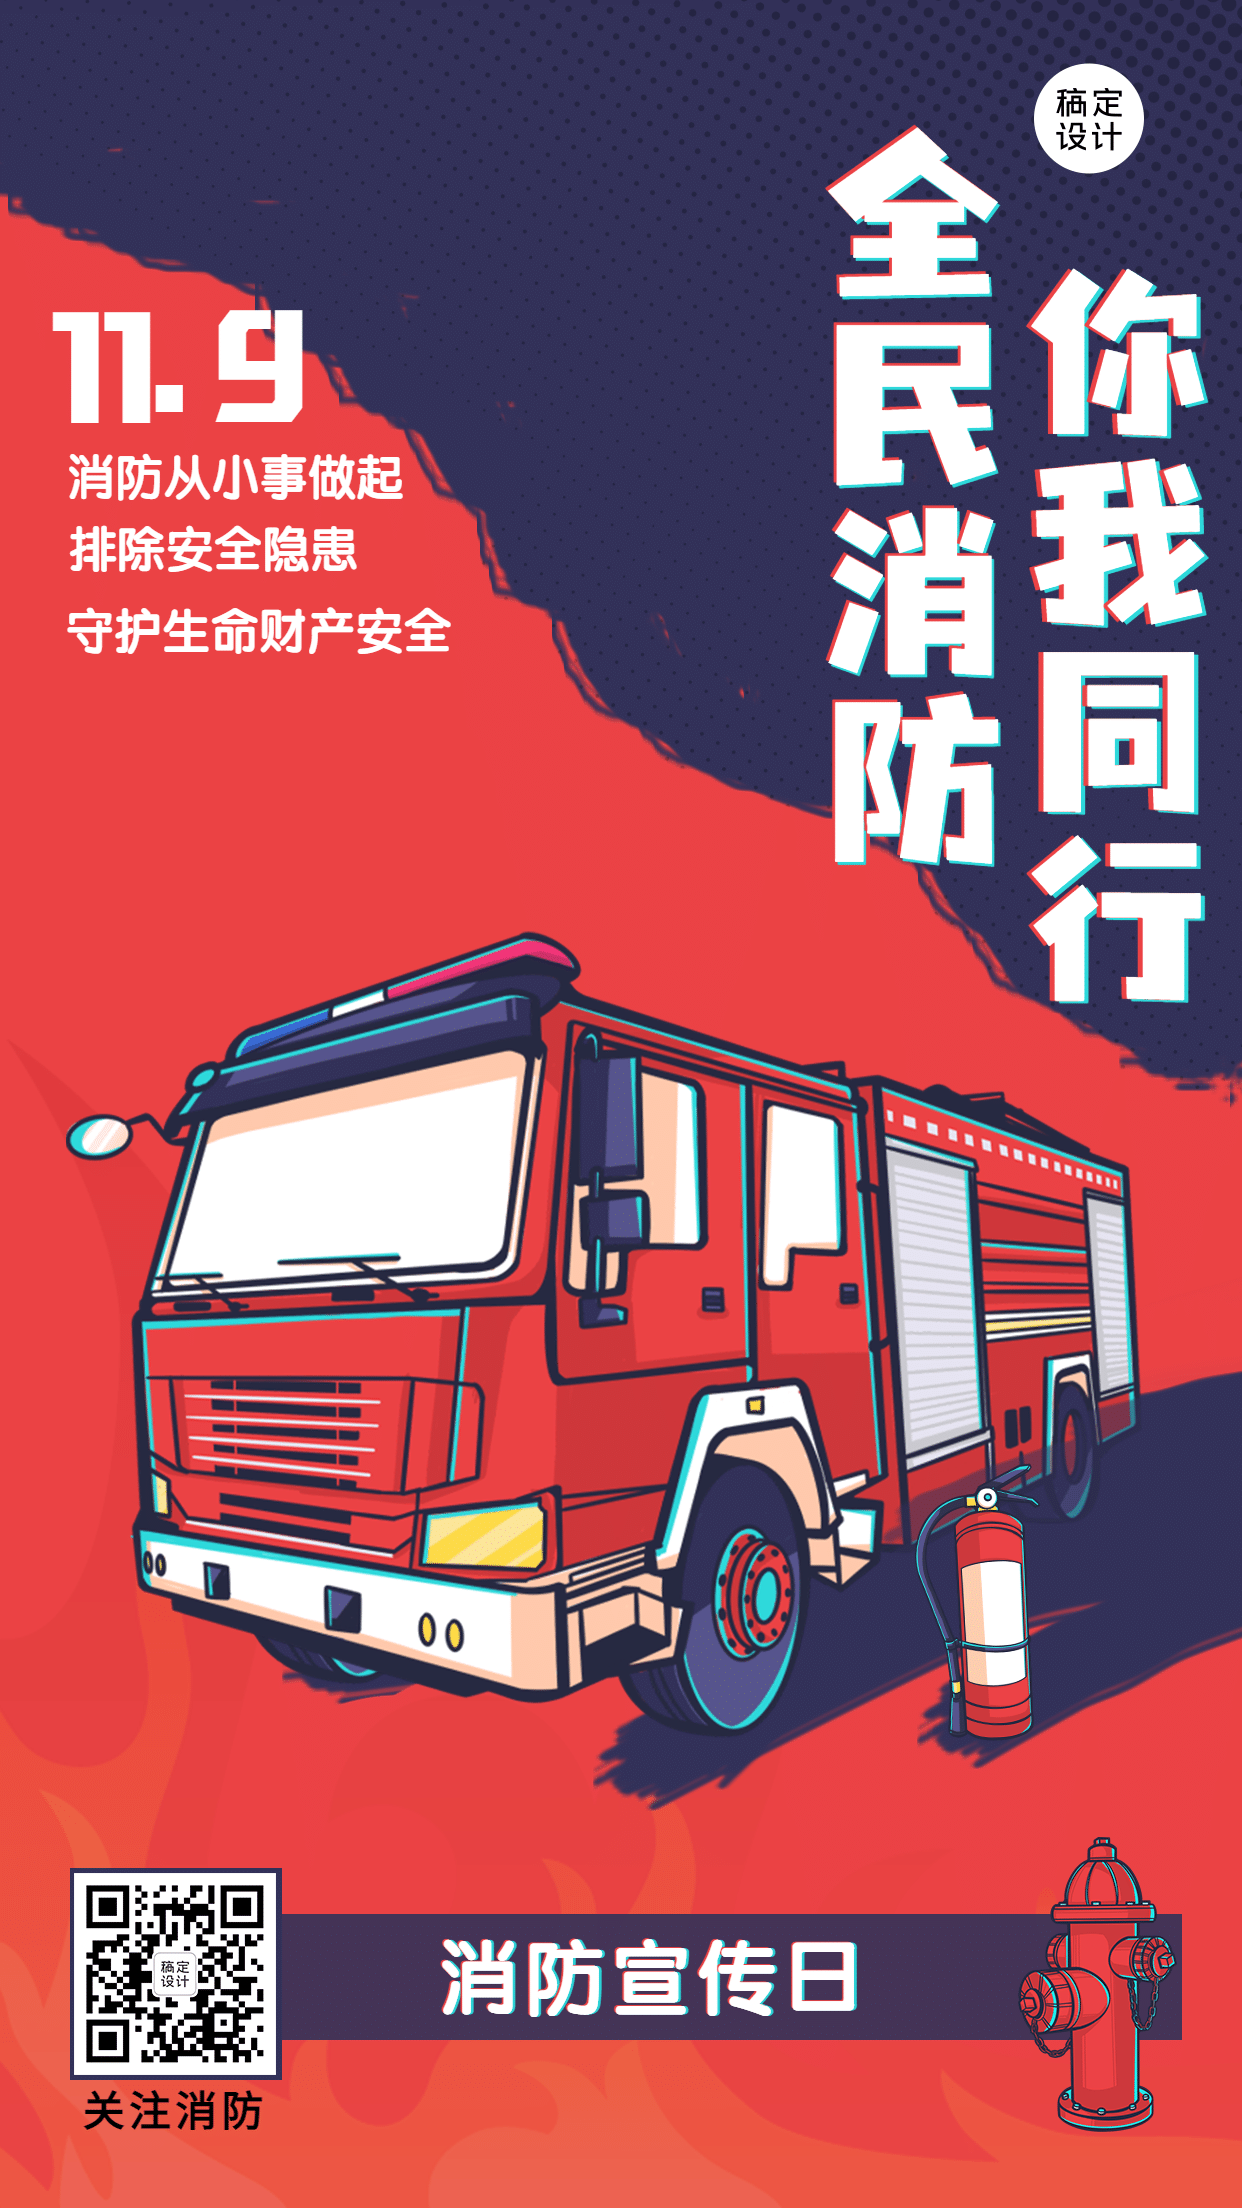 119消防宣传日消防知识科普手机海报